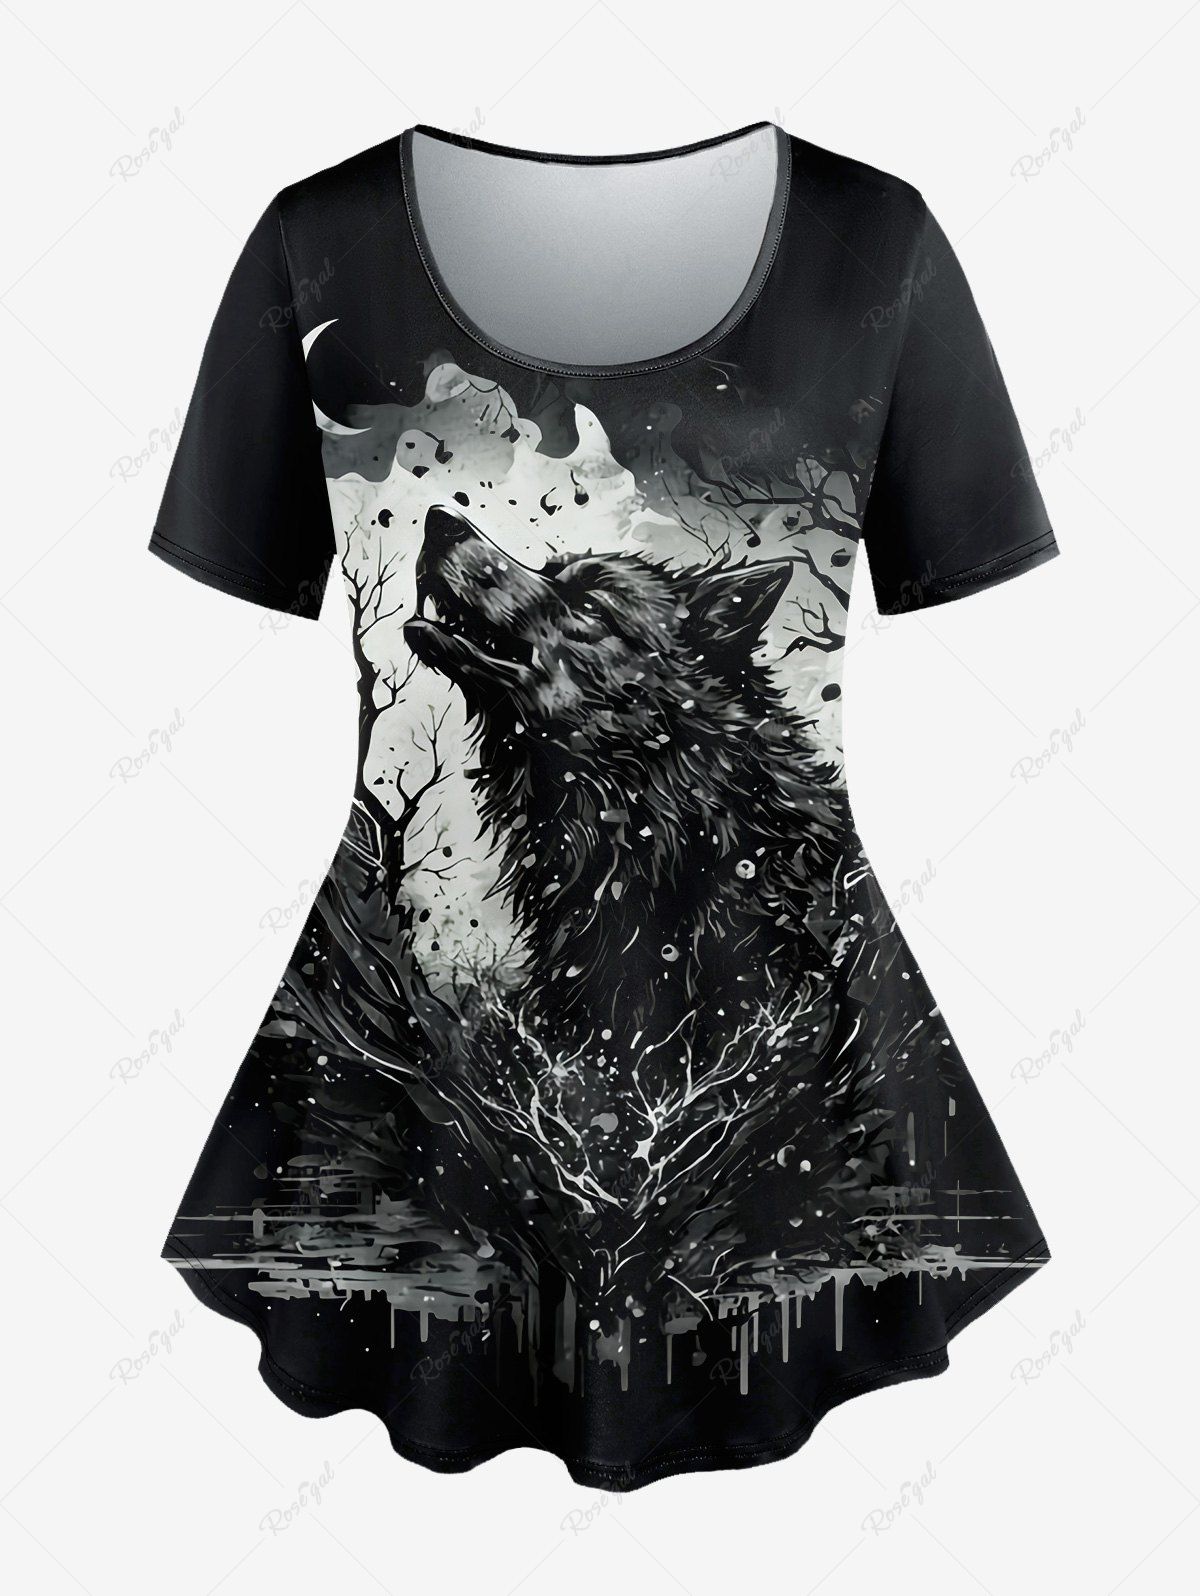 T-shirt Gothique Peinture Eclaboussée Loup et Lune Imprimés à Manches Courtes Noir 3X